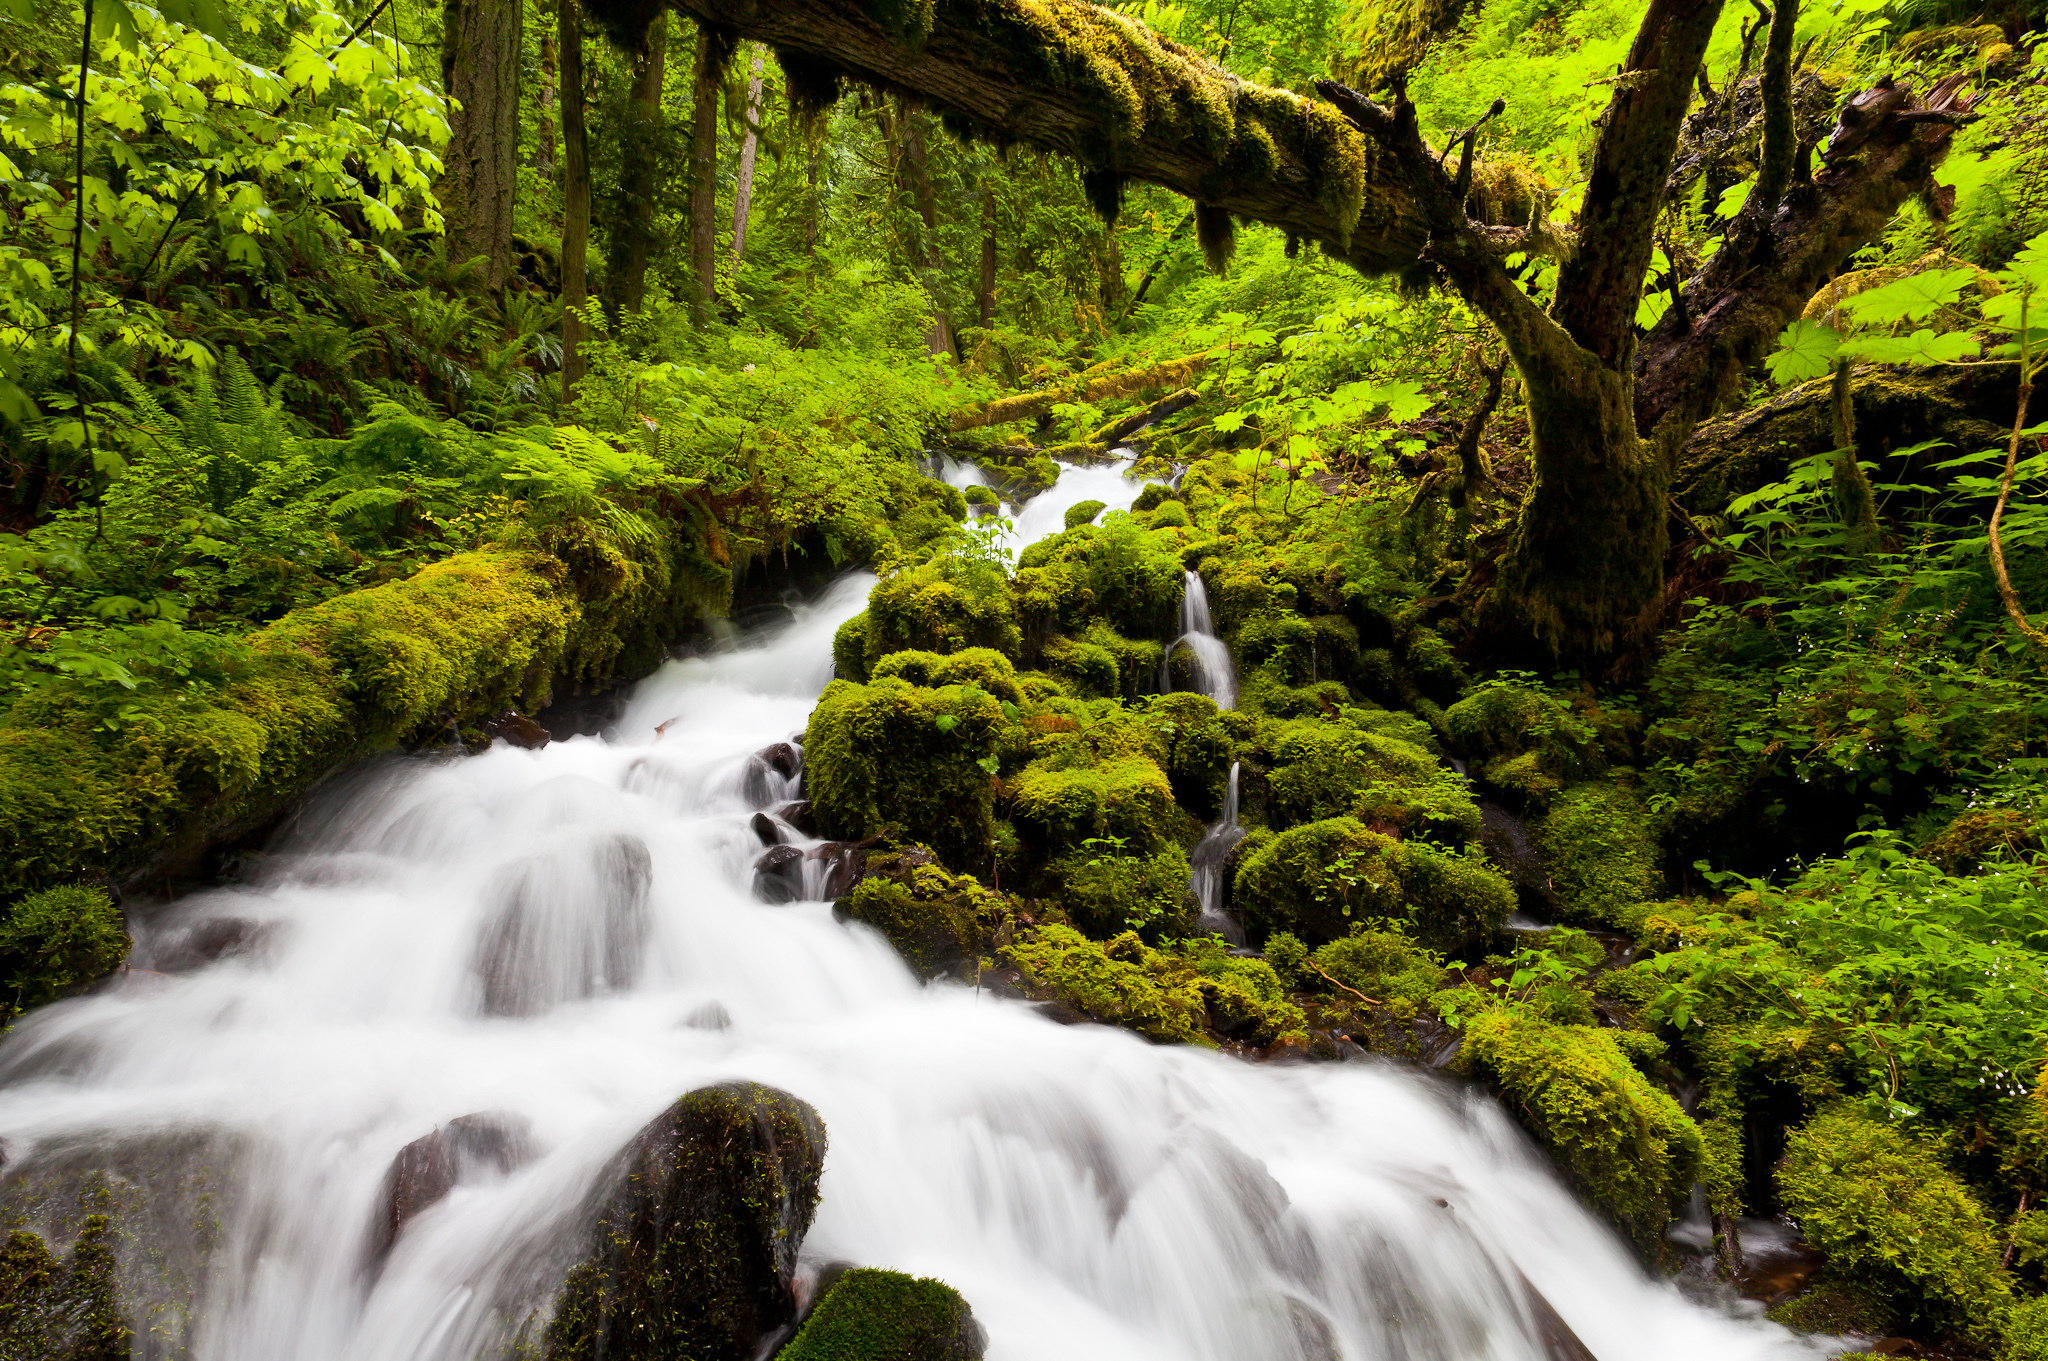 Cascad. Природа. Природа в картинках. Водопад в лесу. Живая природа.